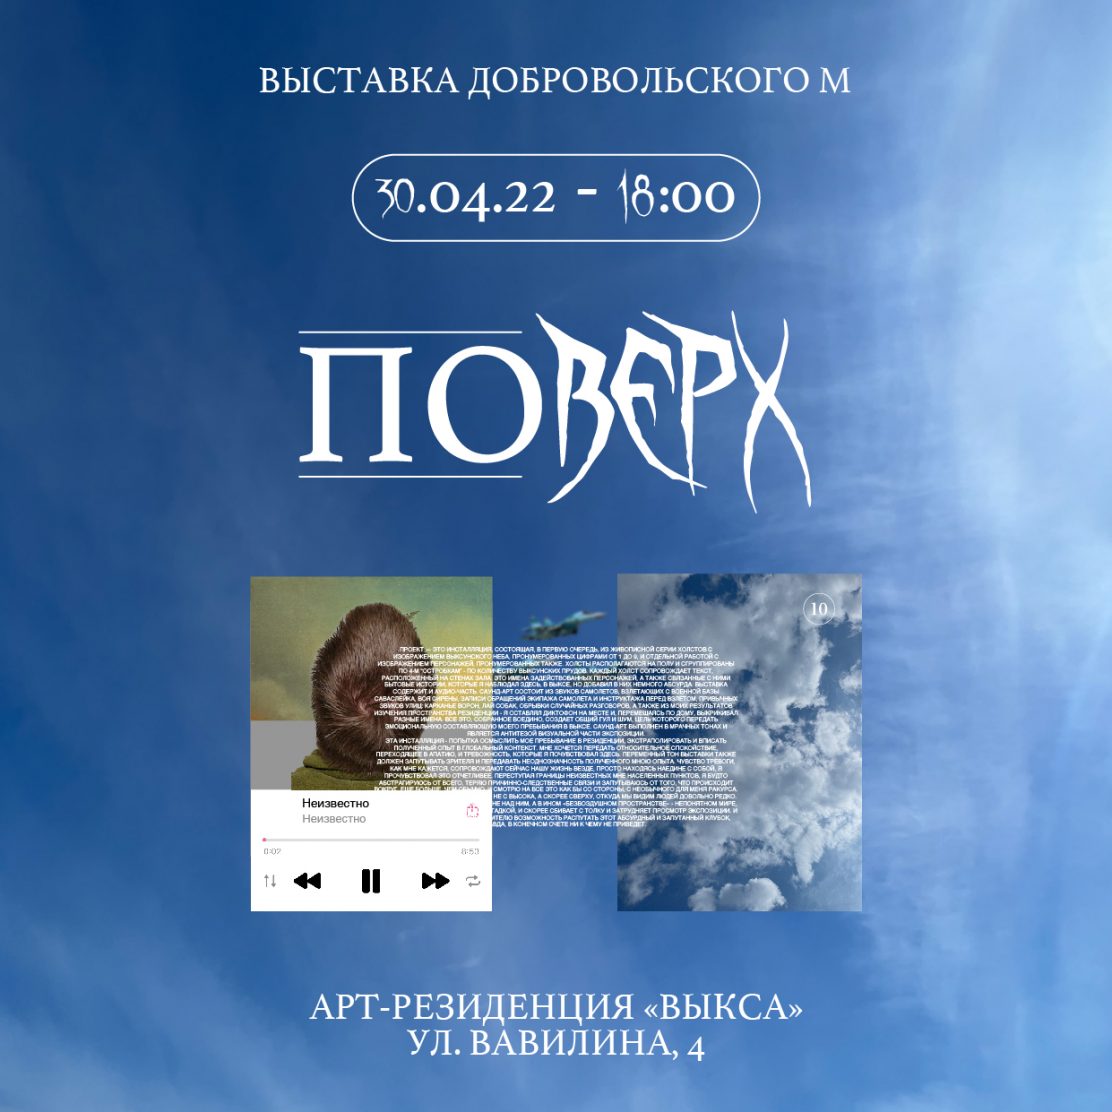 30 апреля в арт-резиденции “Выкса” откроется выставка Михаила Добровольского “Поверх”.